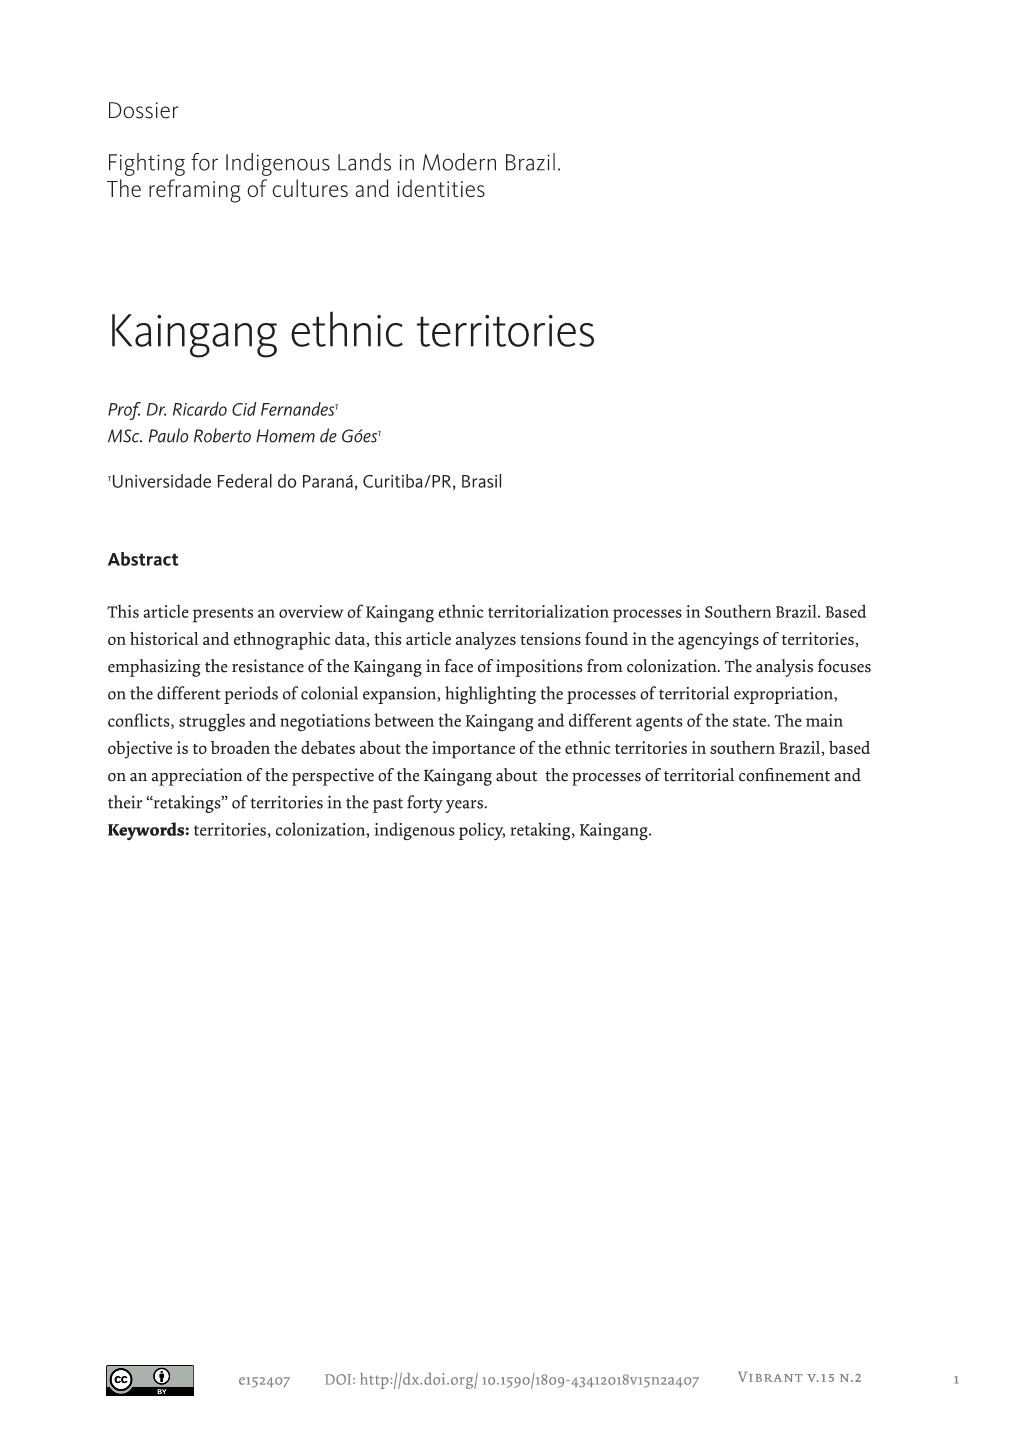 Kaingang Ethnic Territories